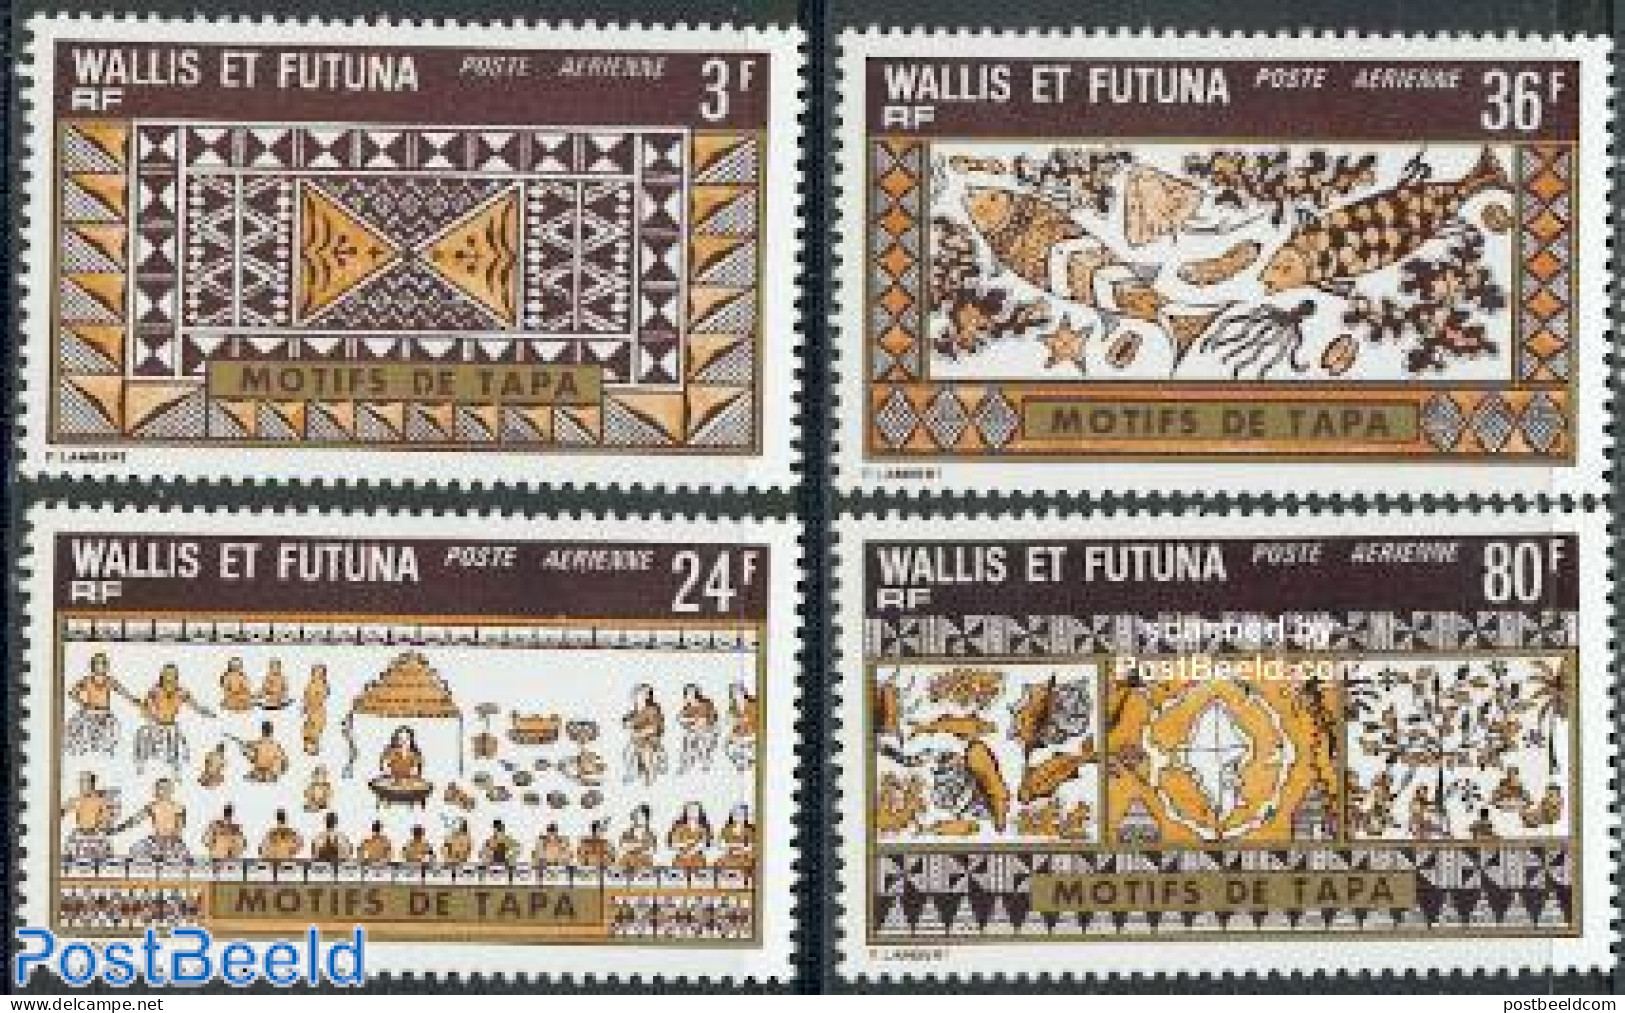 Wallis & Futuna 1975 Tapa Textiles 4v, Mint NH, Various - Textiles - Textile